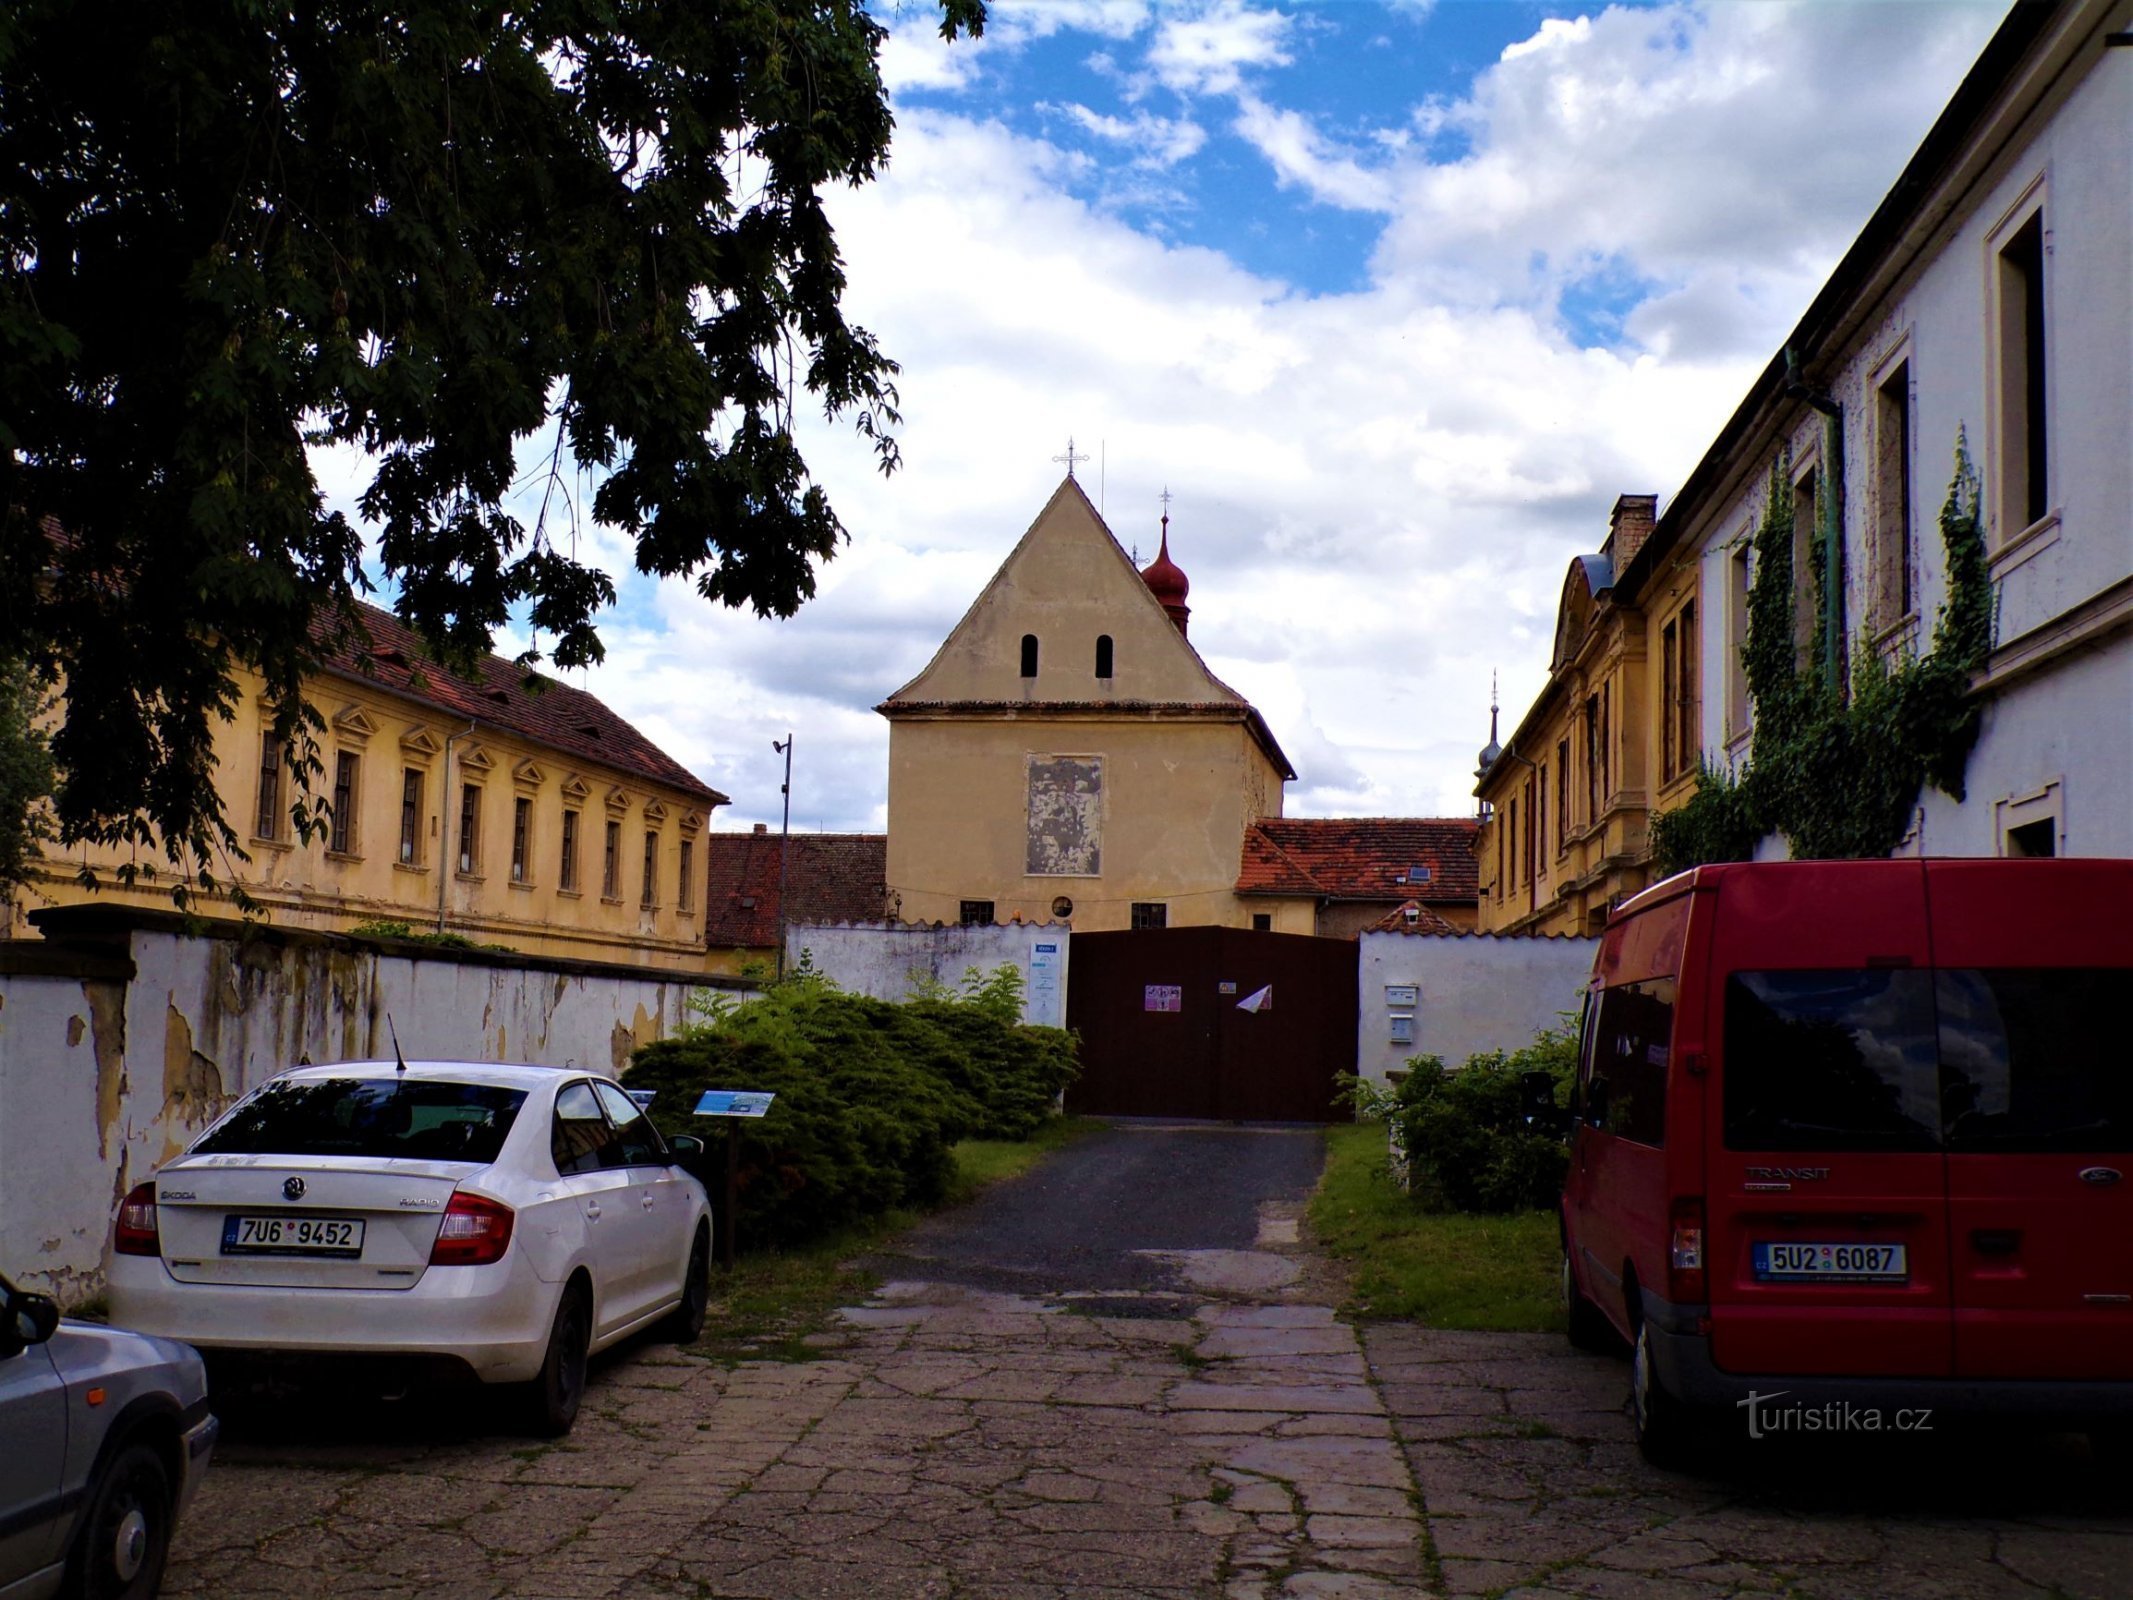 Biserica Sf. Wenceslas cu o parte a fostei mănăstiri capucinilor (Roudnice nad Labem, 9.7.2021 iulie XNUMX)